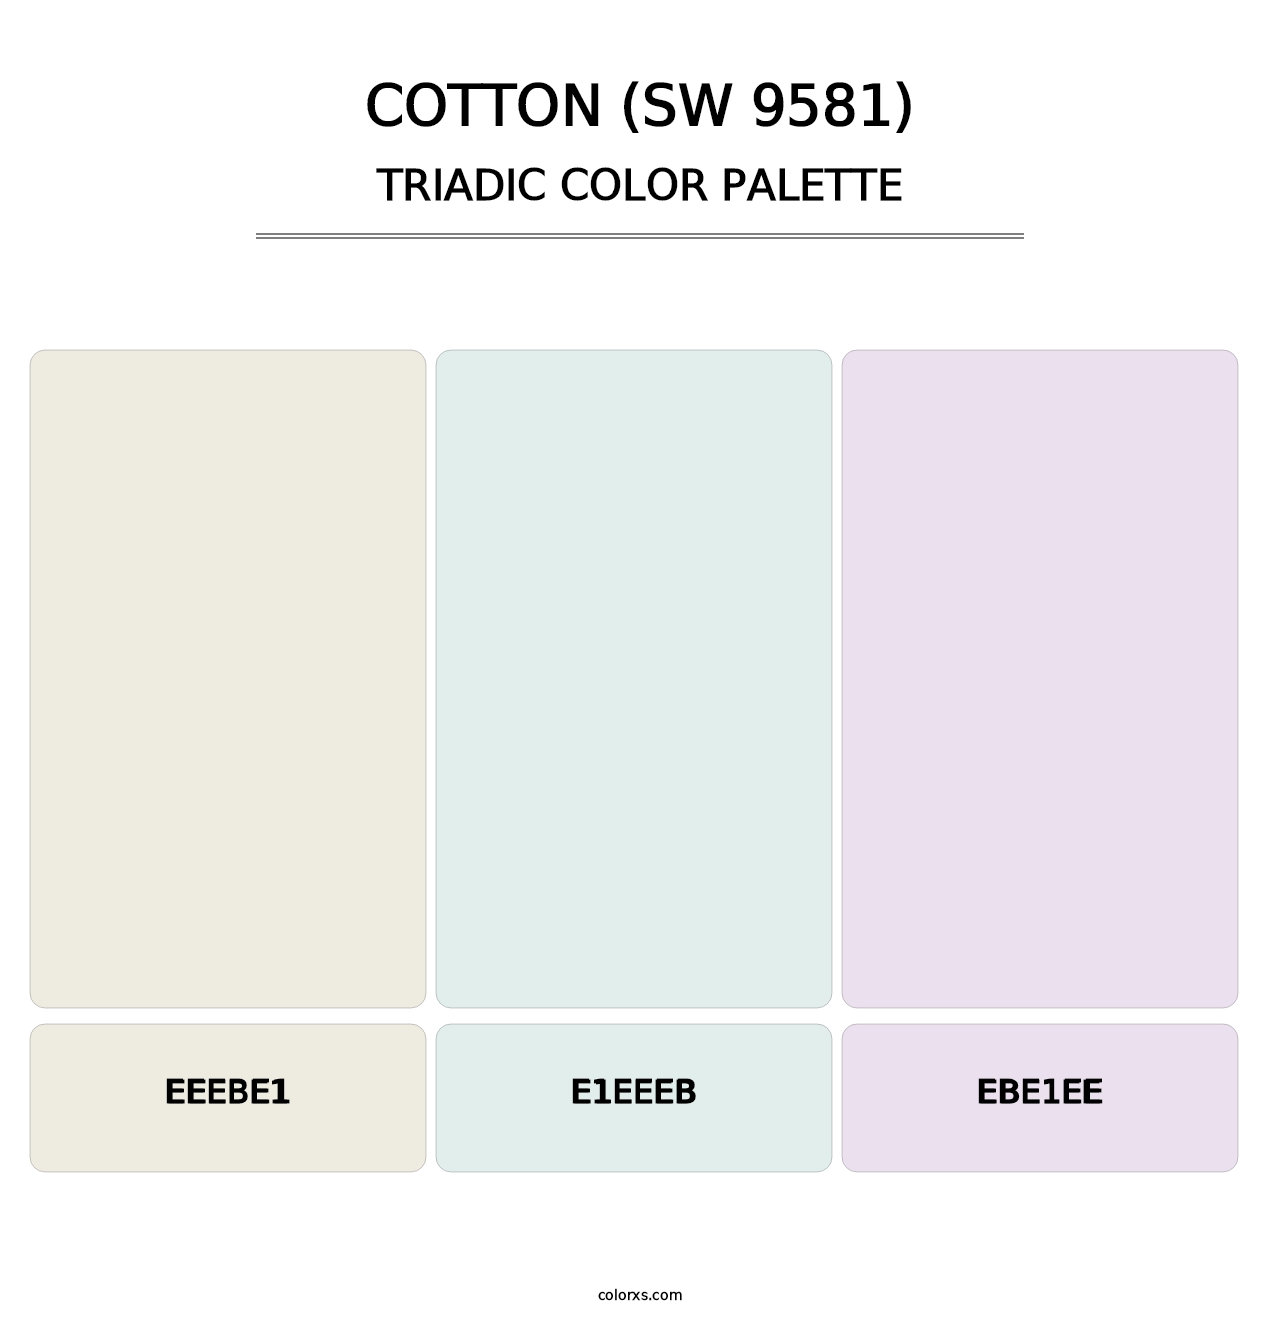 Cotton (SW 9581) - Triadic Color Palette